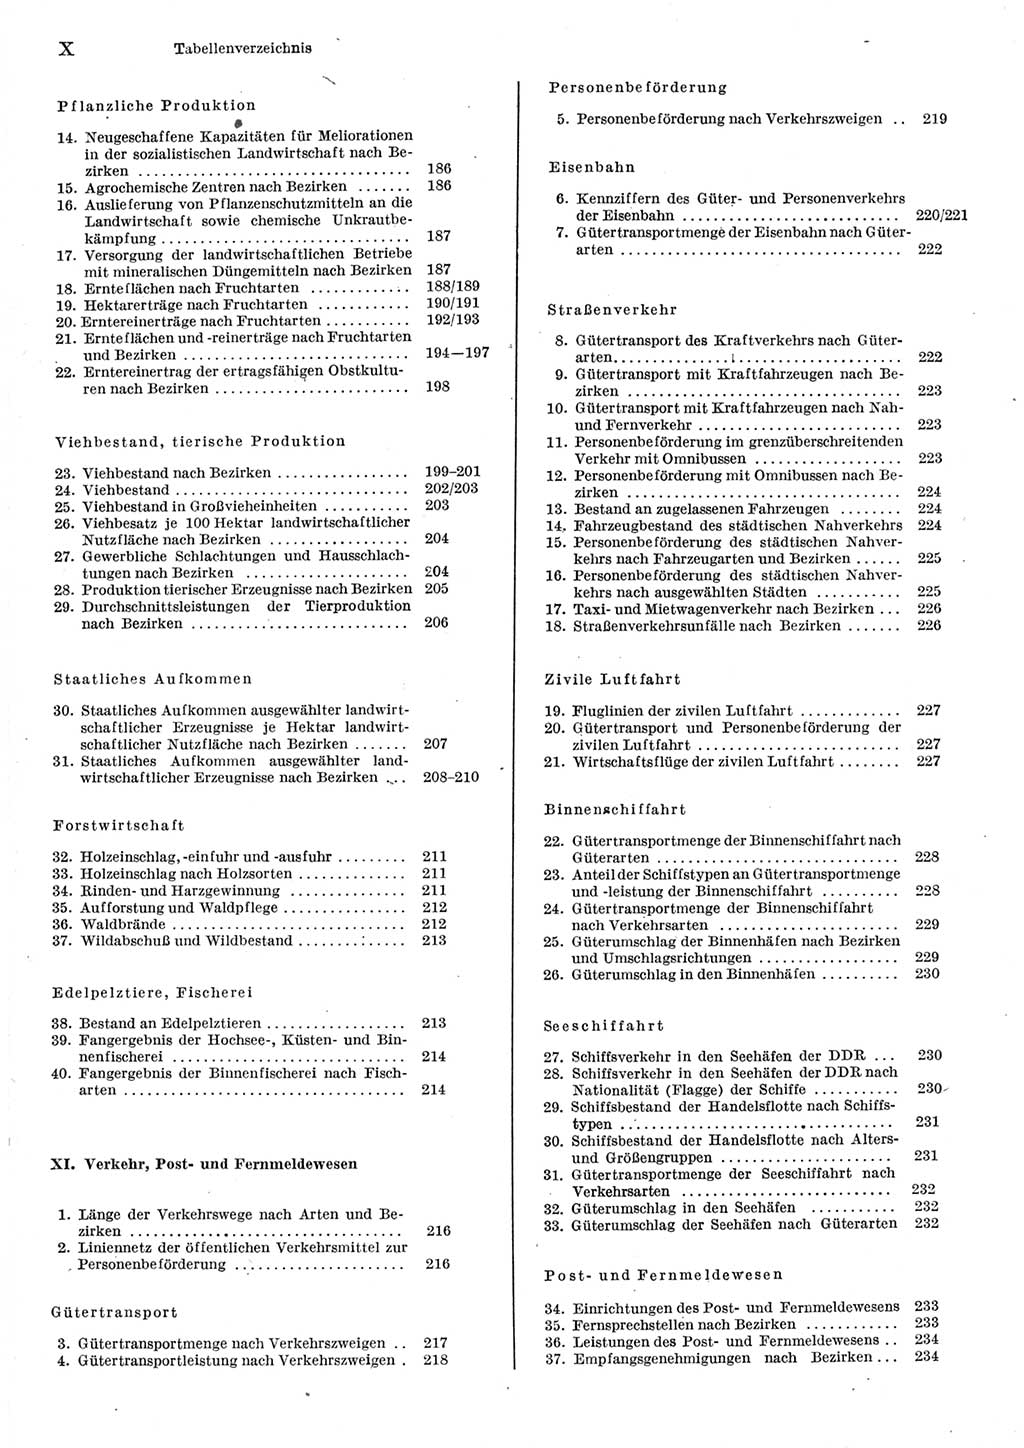 Statistisches Jahrbuch der Deutschen Demokratischen Republik (DDR) 1977, Seite 10 (Stat. Jb. DDR 1977, S. 10)